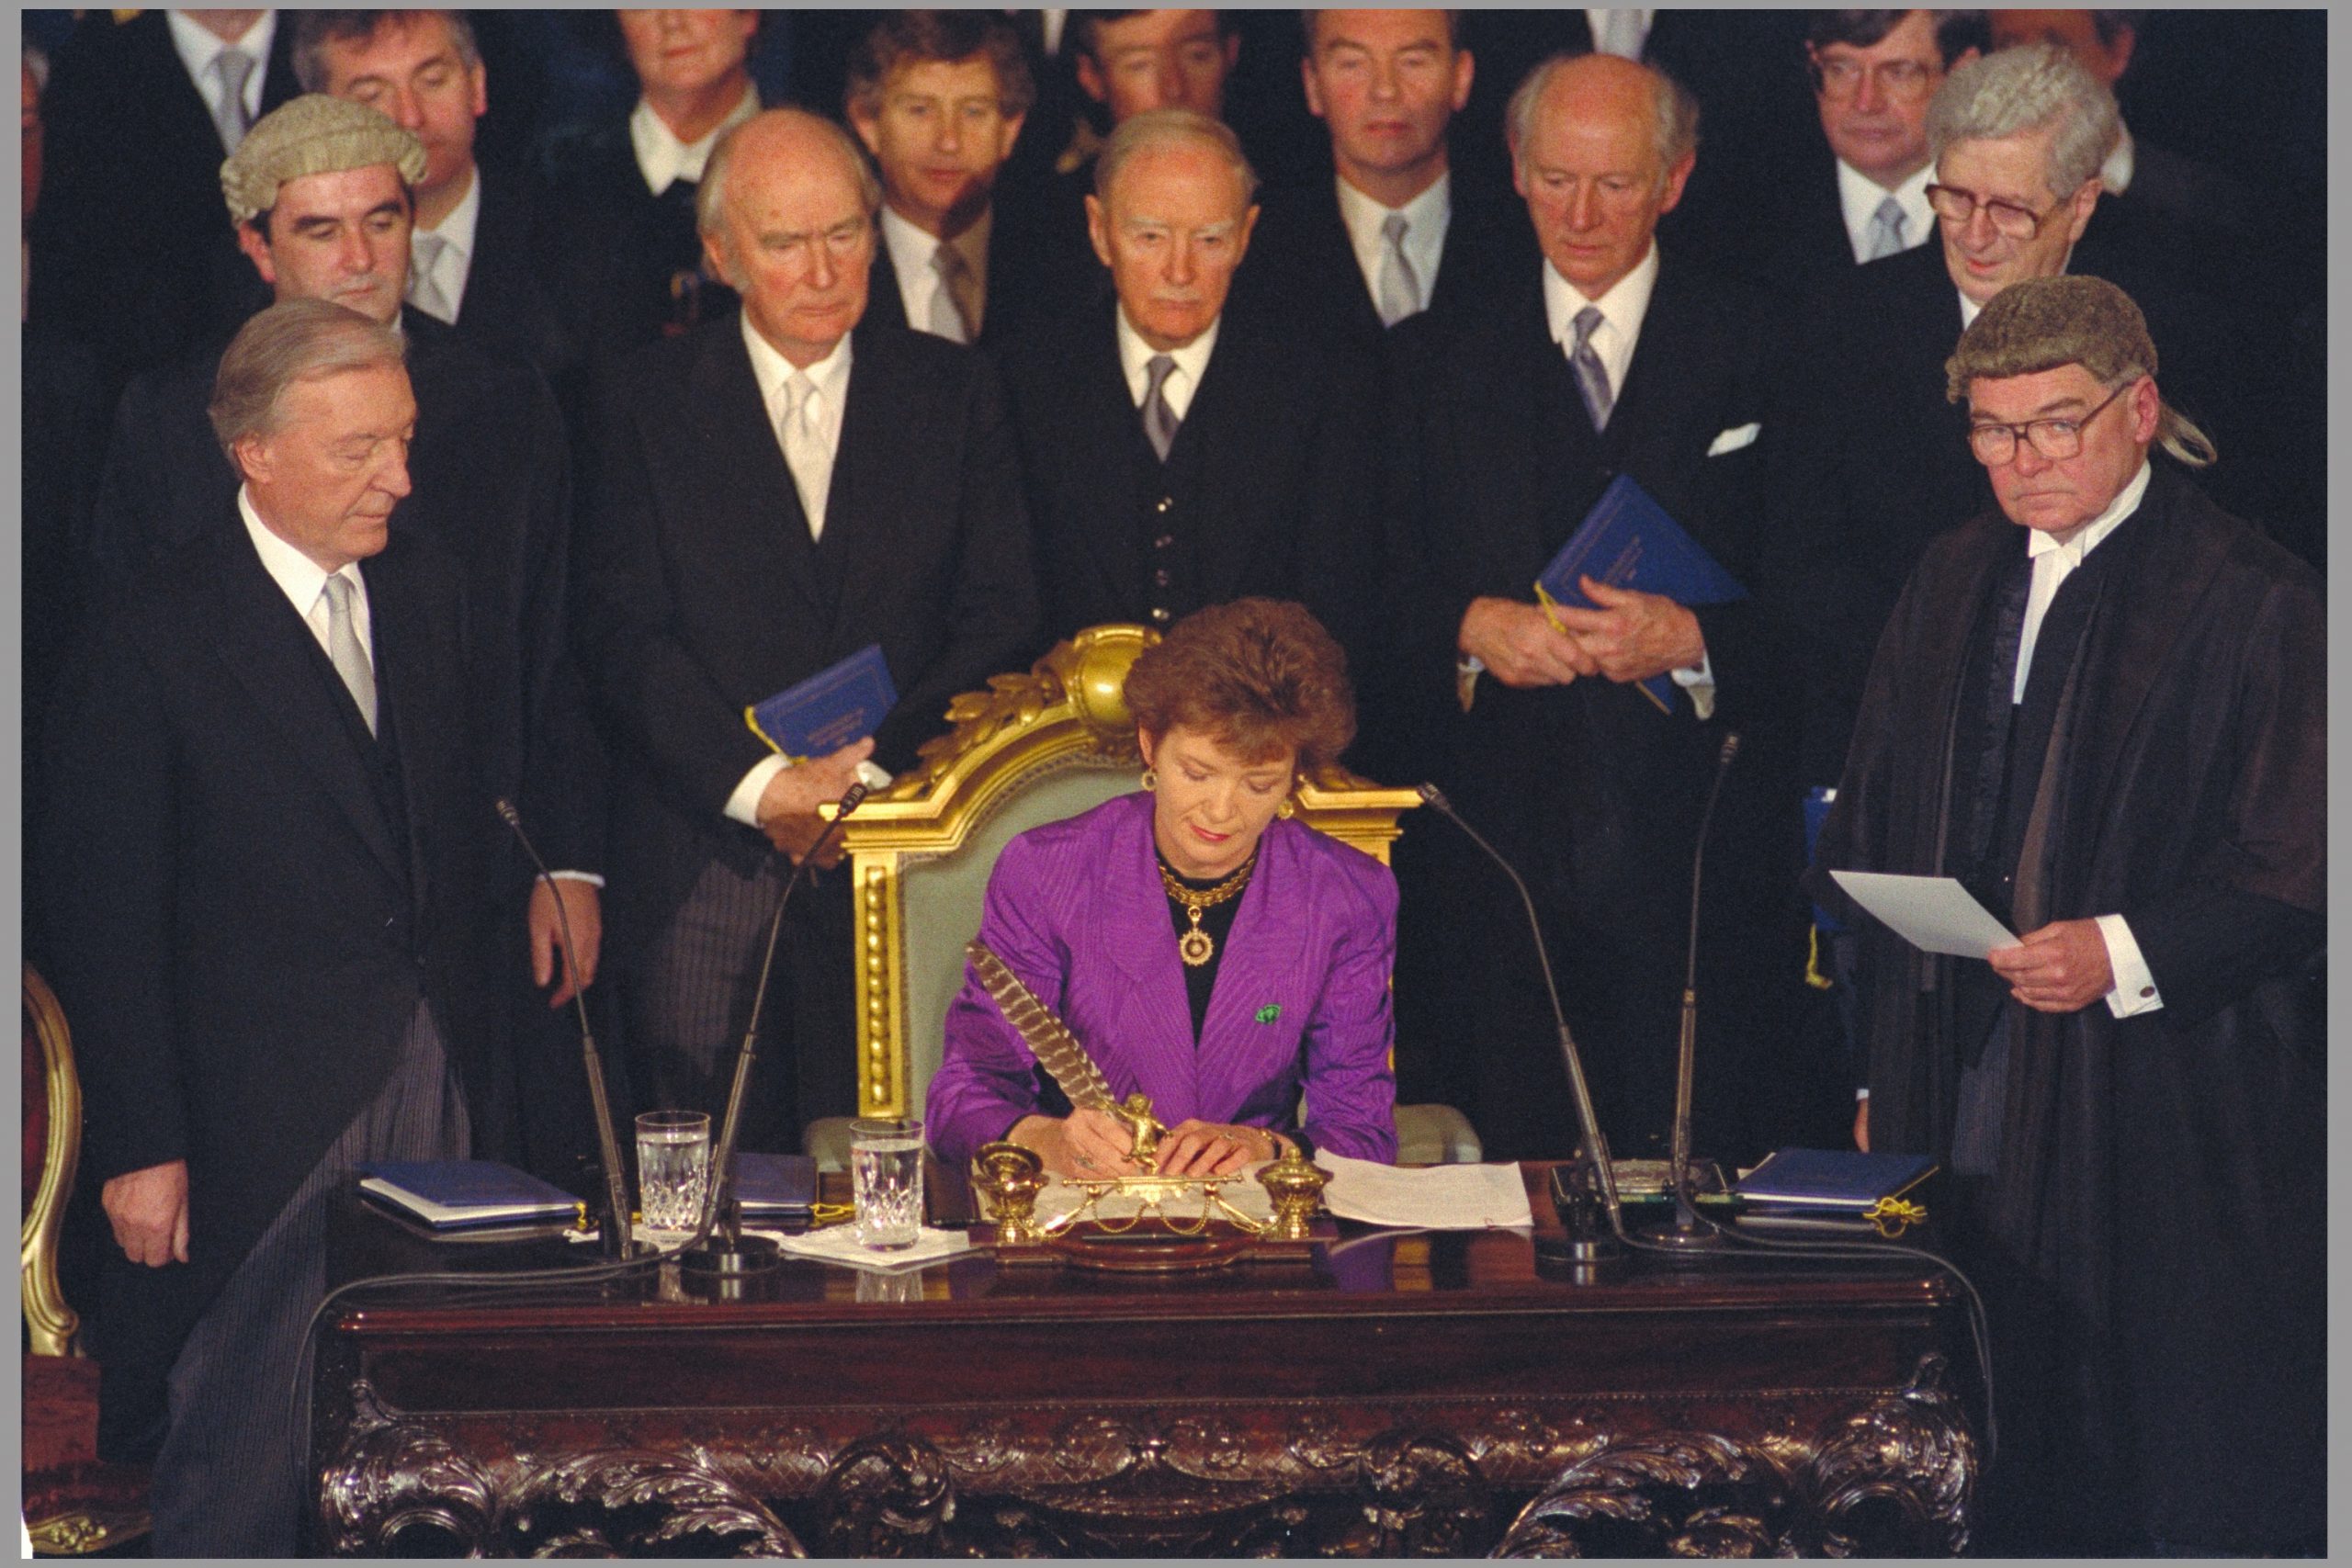 Mary Robinson’s Inauguration